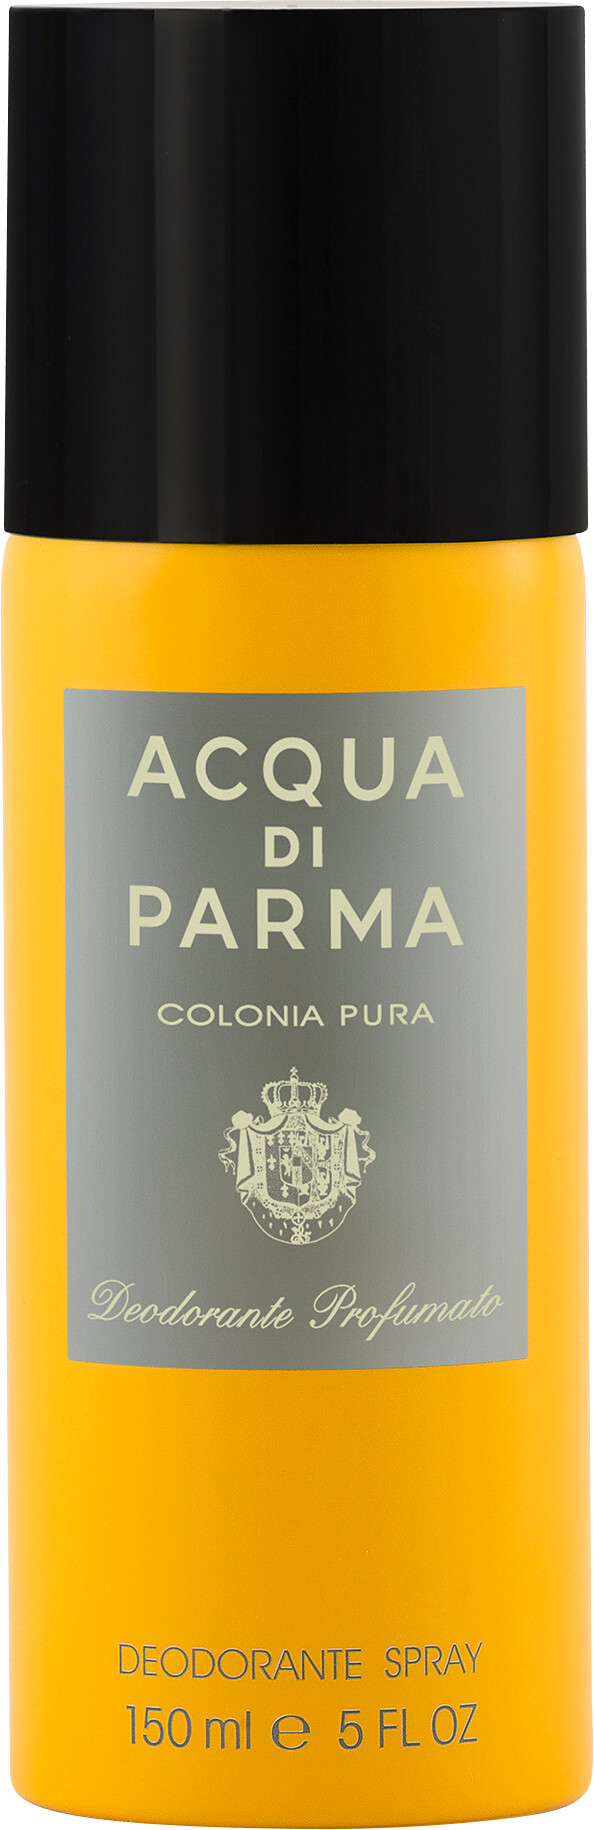 Acqua di Parma Colonia Pura Deodorant Spray 150ml